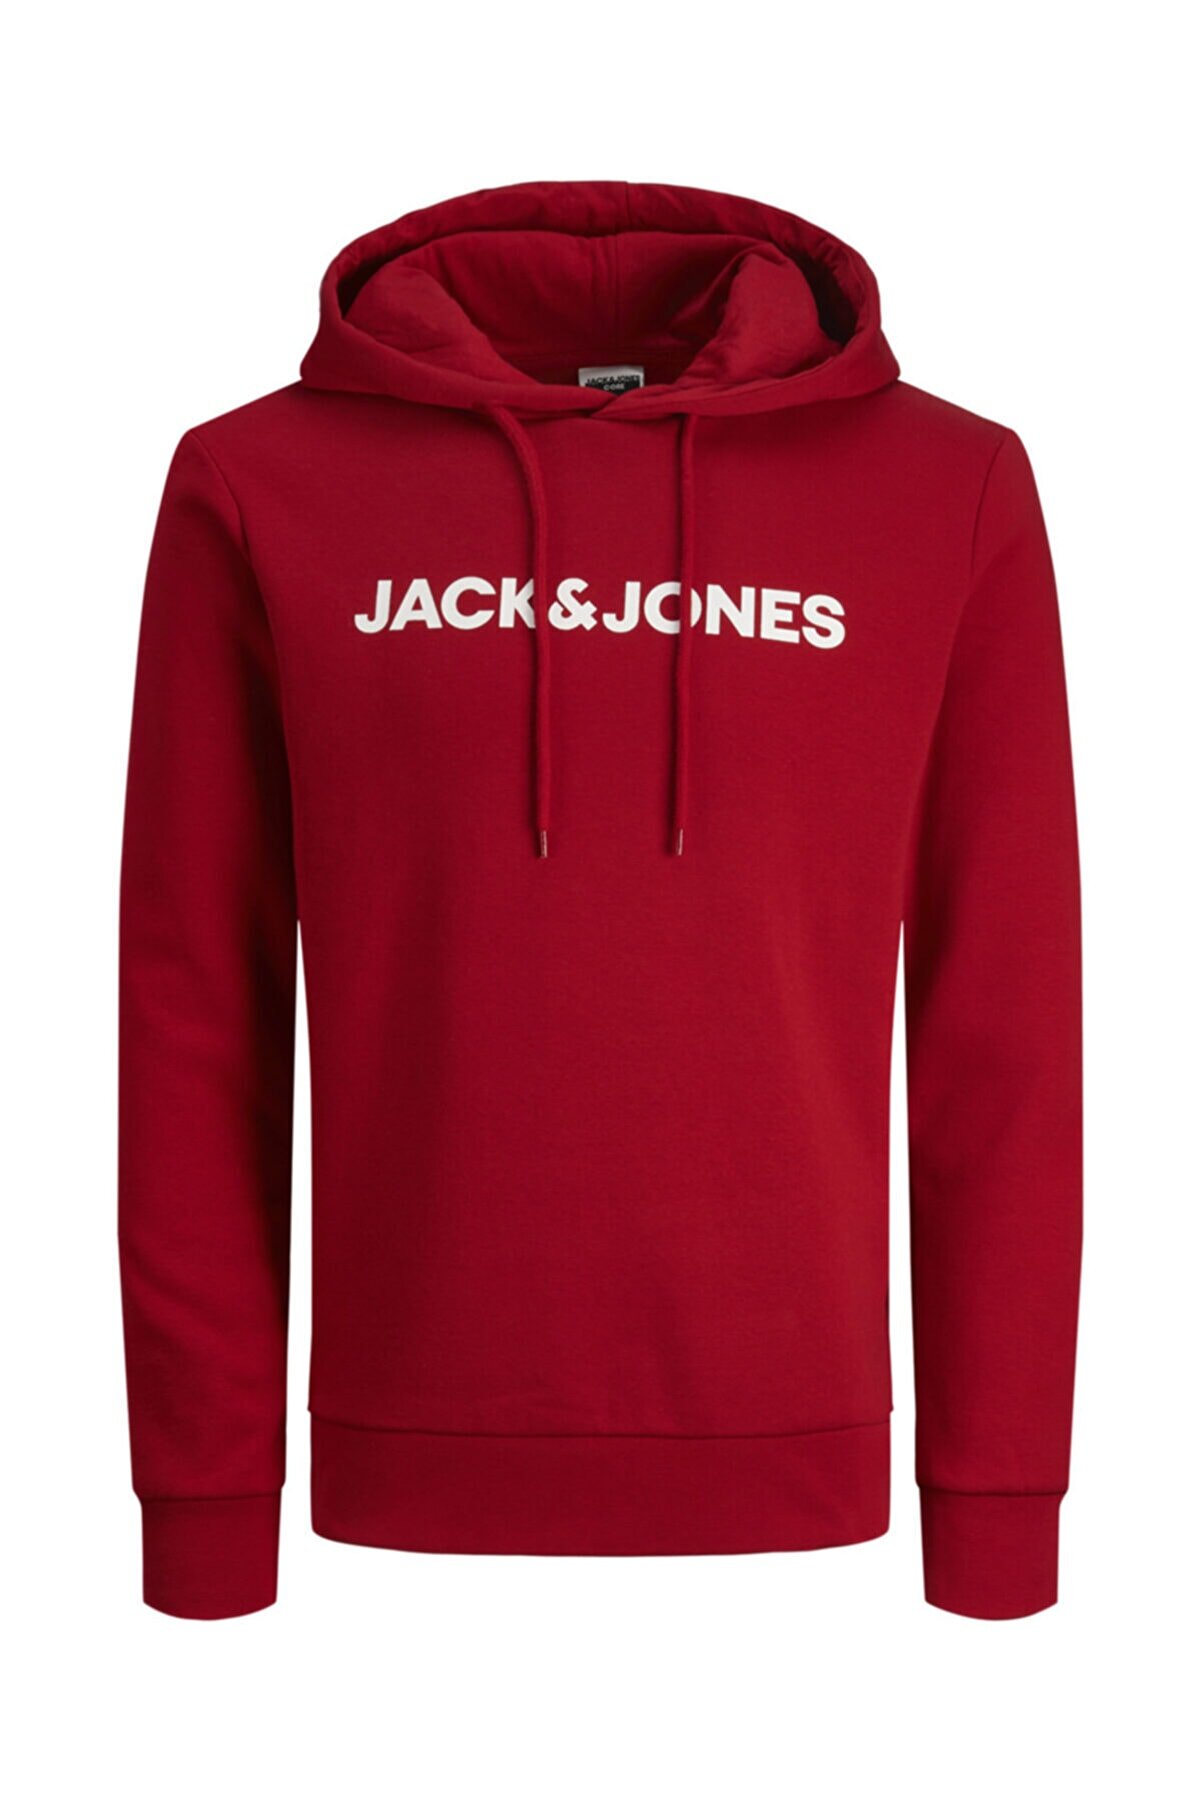 Jack & Jones Kapüşonlu Logo Basklı Sweatshirt 12214733 Jcodelrıck